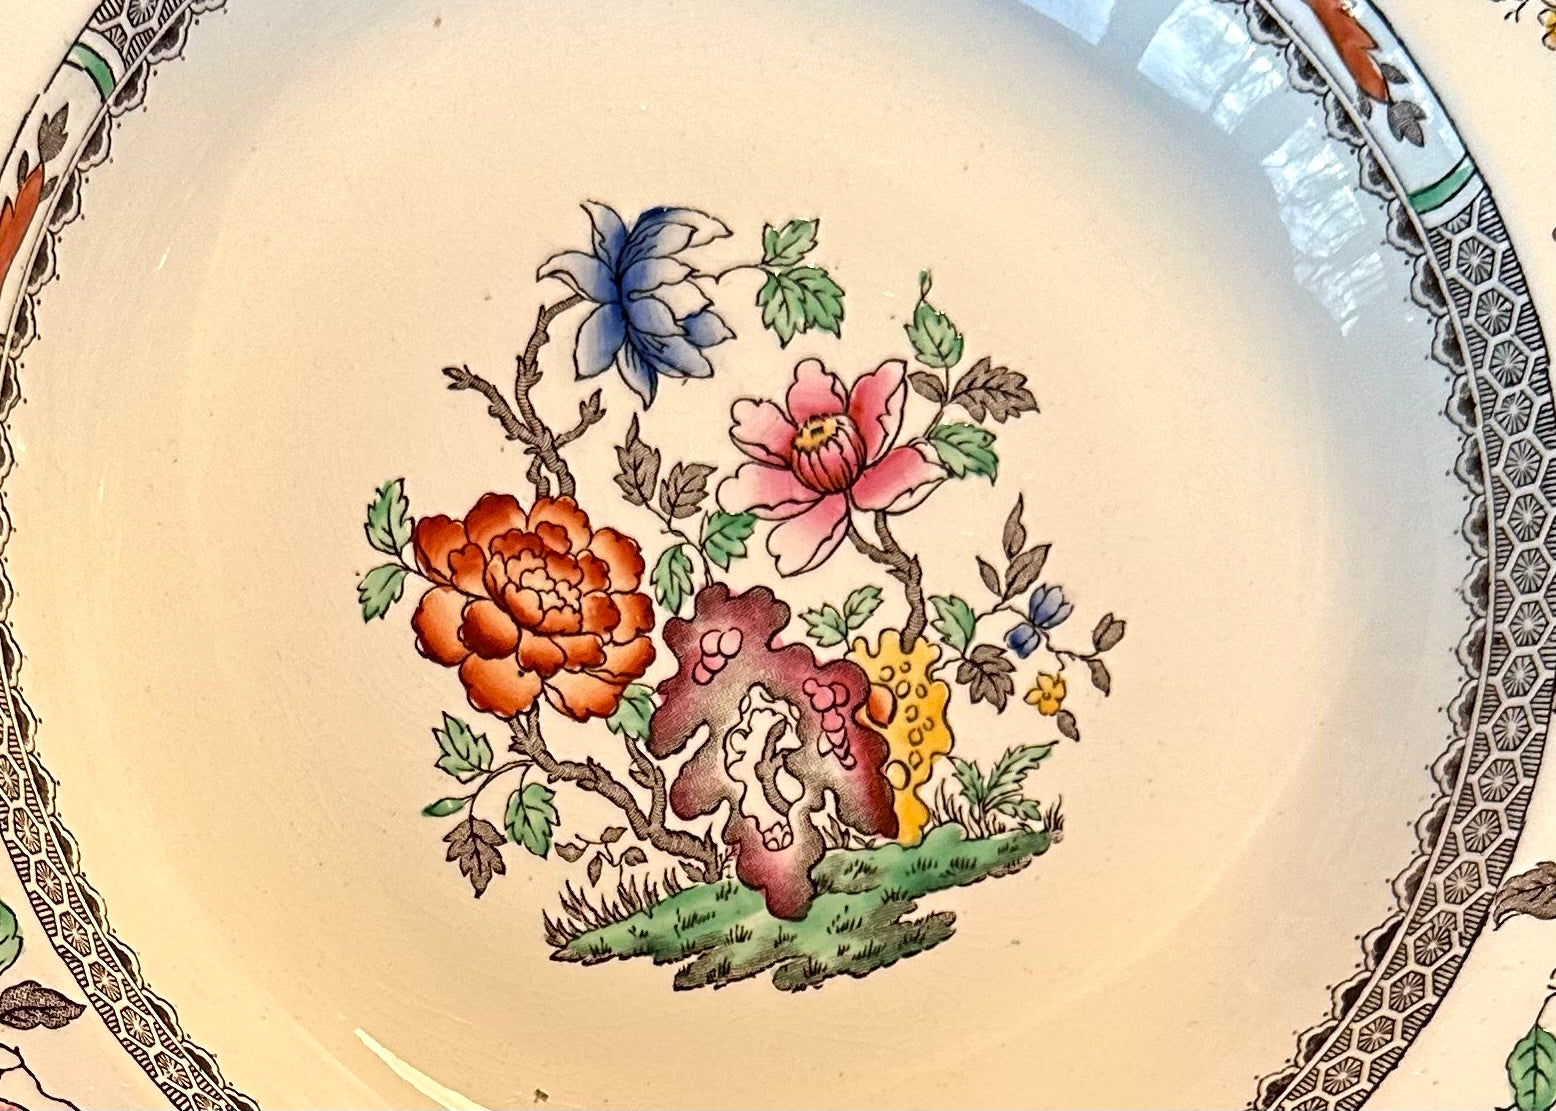 Set of 6 Spode Copeland Chinese Rose Dinner Plates #ChineseRose #SpodeCopeland #VintageDinnerPlates - DharBazaar